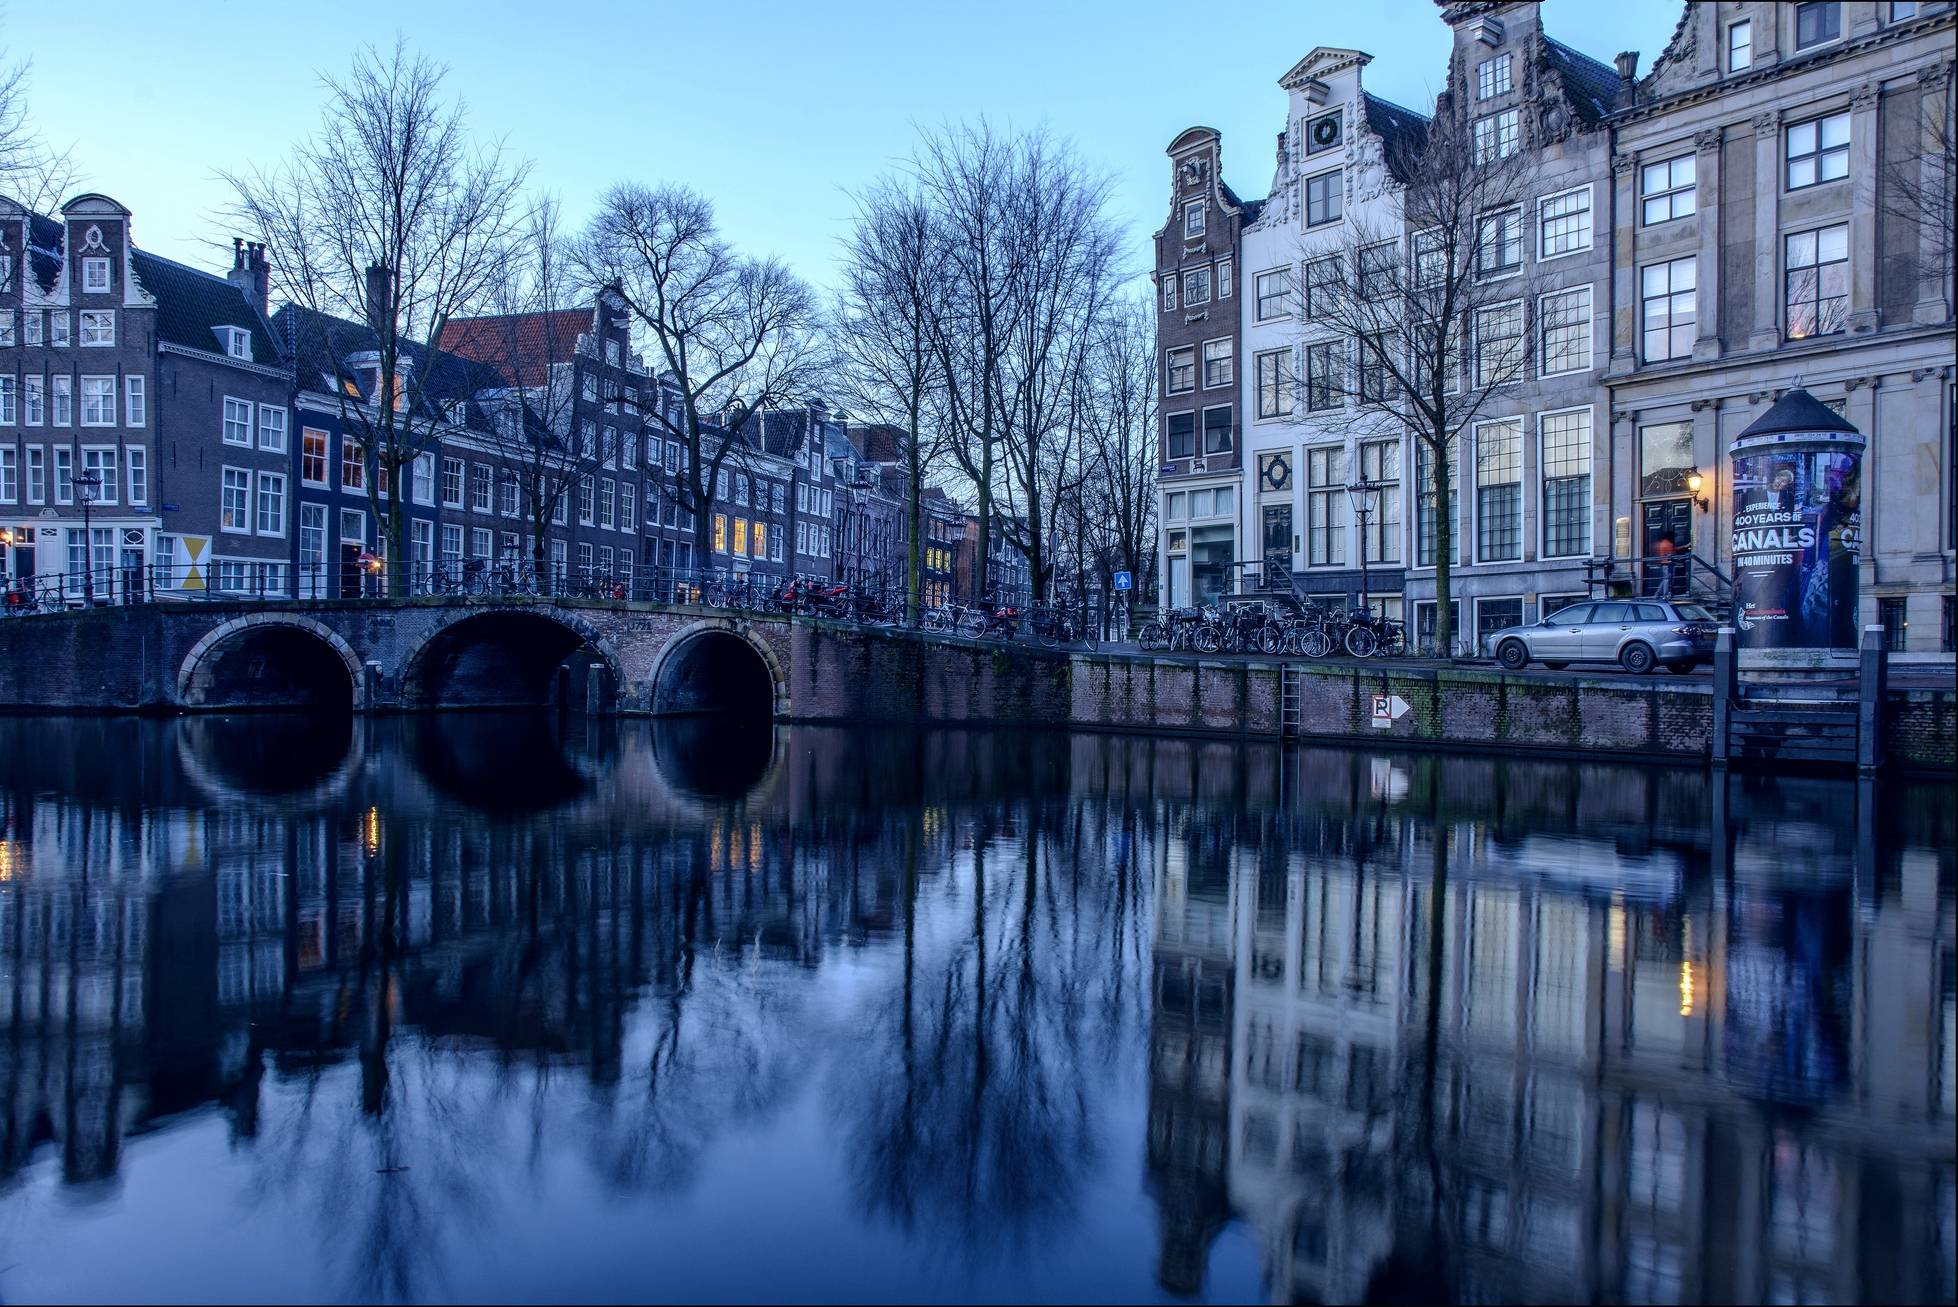 免费照片下载壁纸 荷兰首都和最大城市阿姆斯特丹